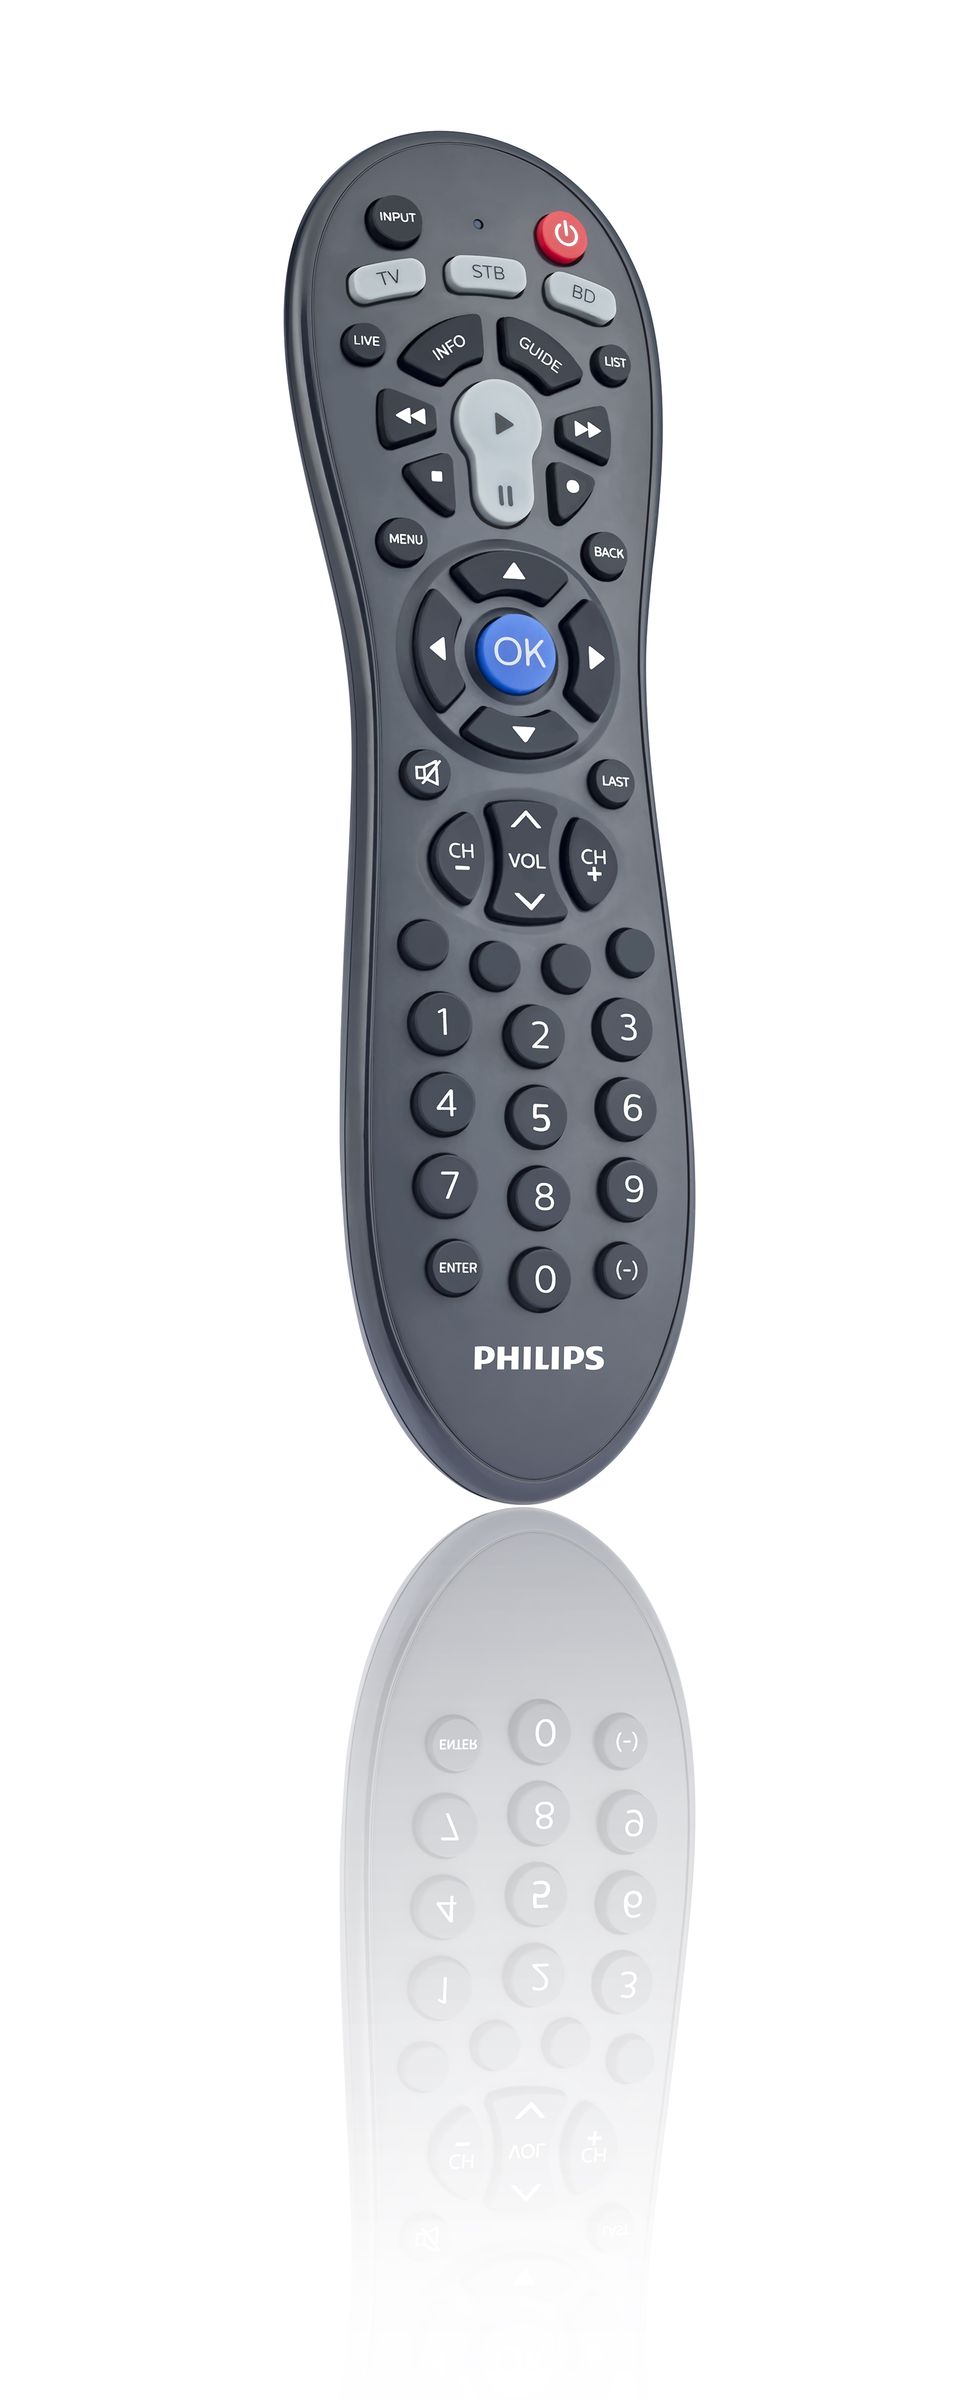 Philips Home Appliances – Home Appliances Philips